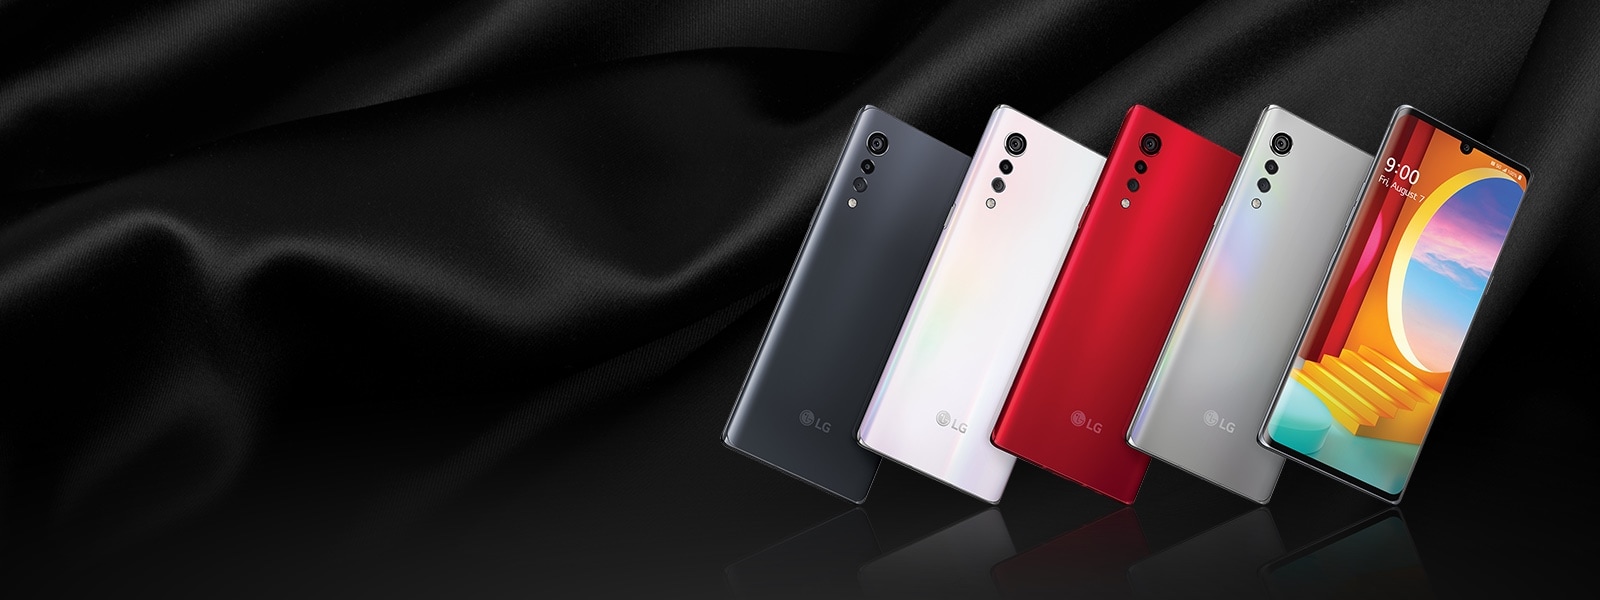 Velvet phones - black, white, red, gray, and lock screen 